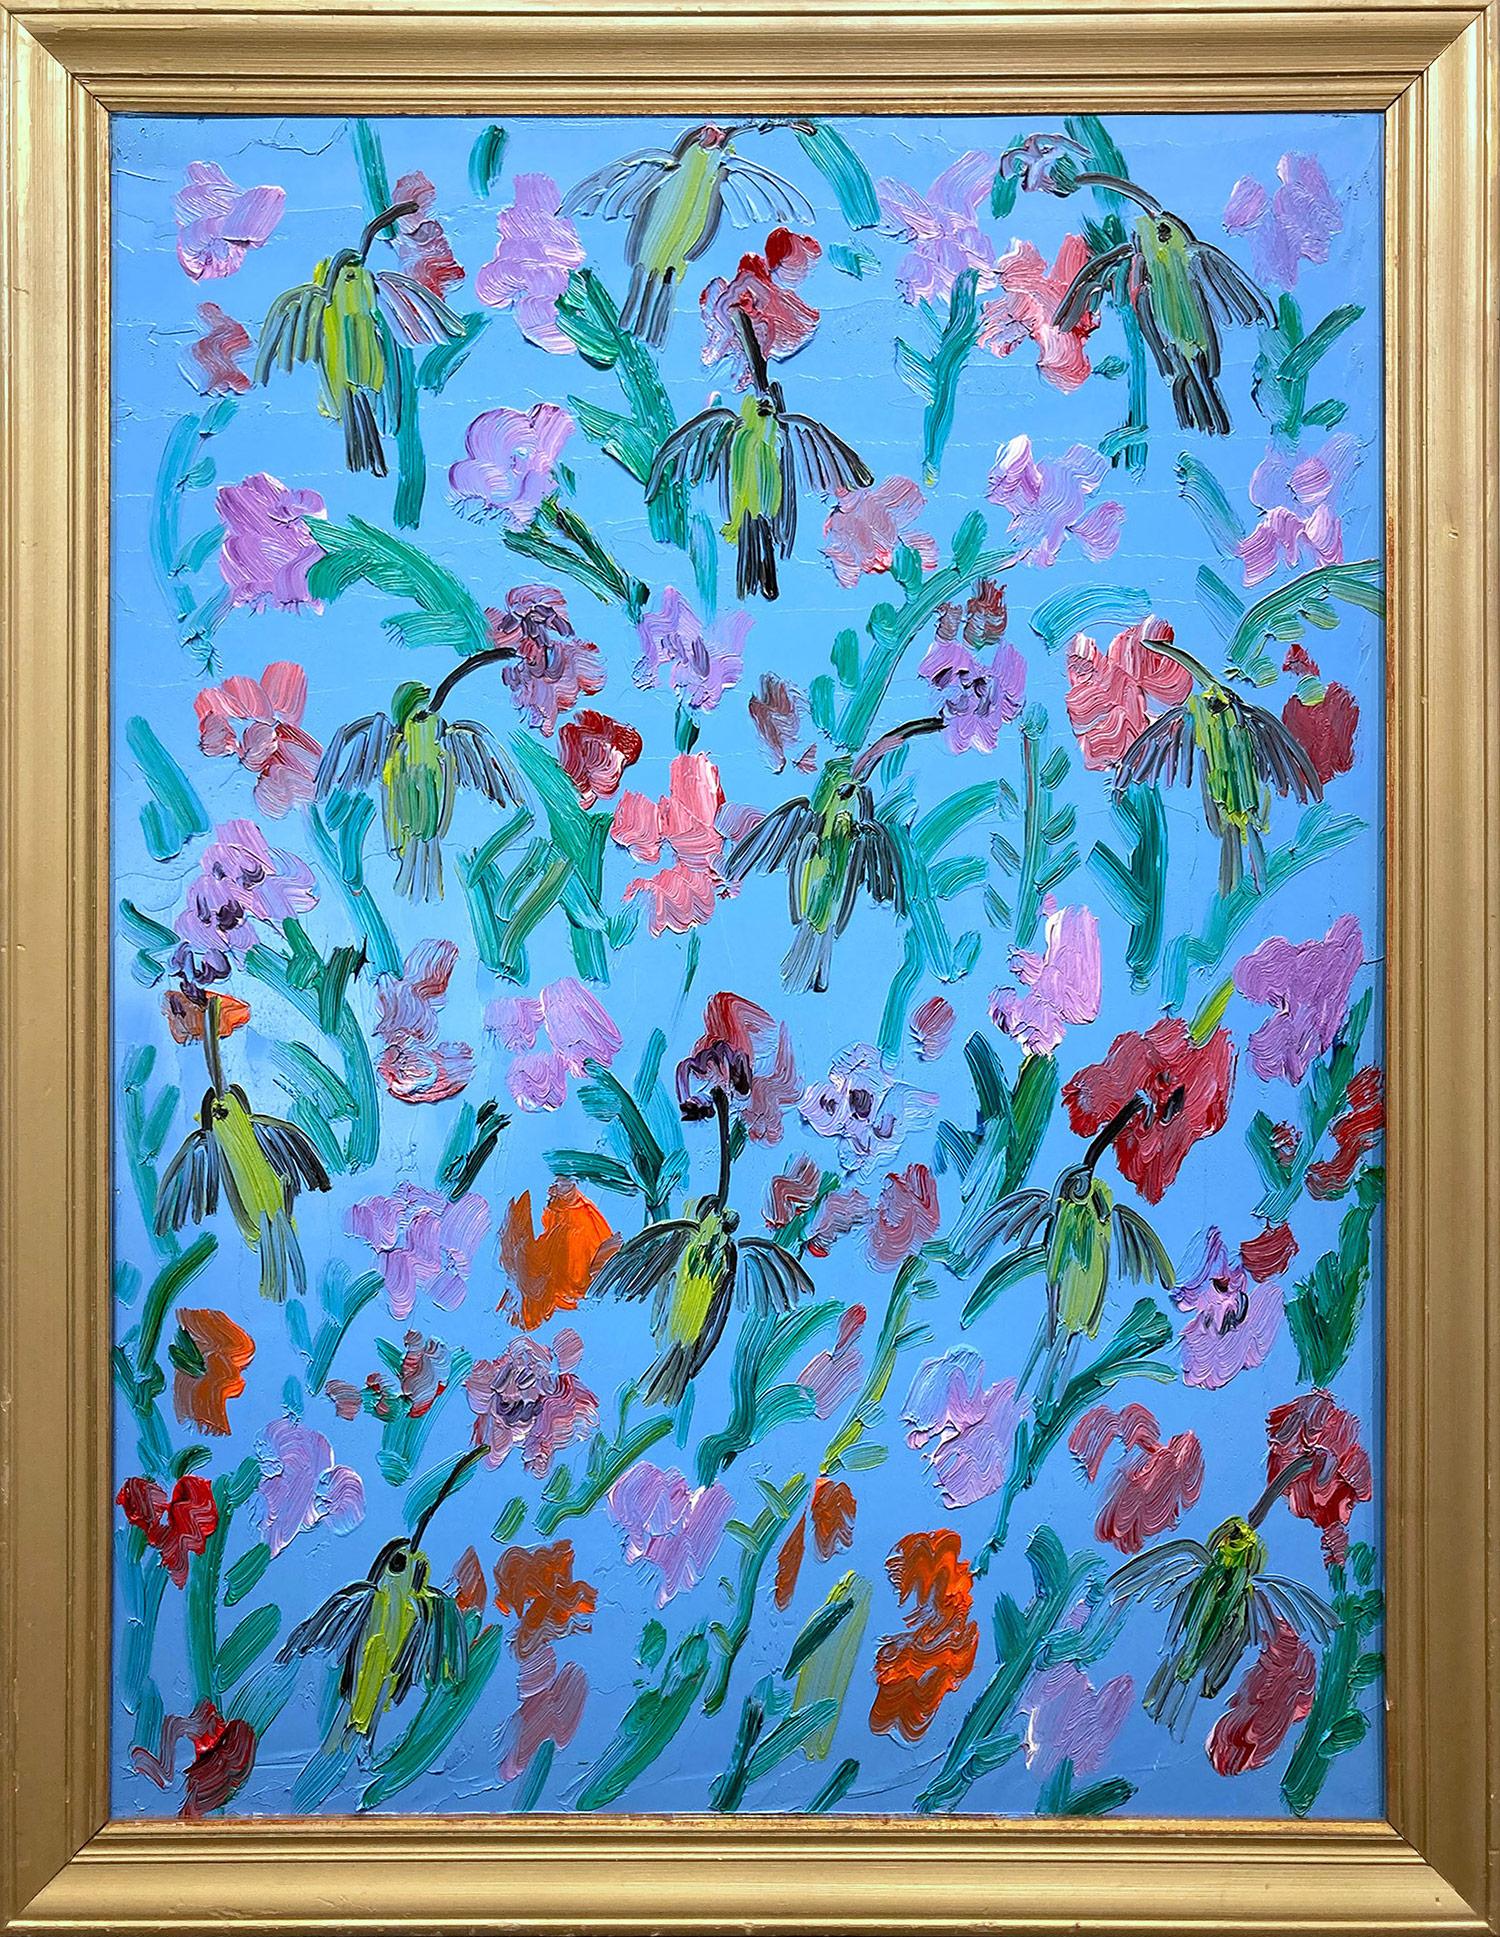 "Hummingbirds Bouganvilla" Peinture à l'huile sur panneau de bois encadrée, fond bleu ciel